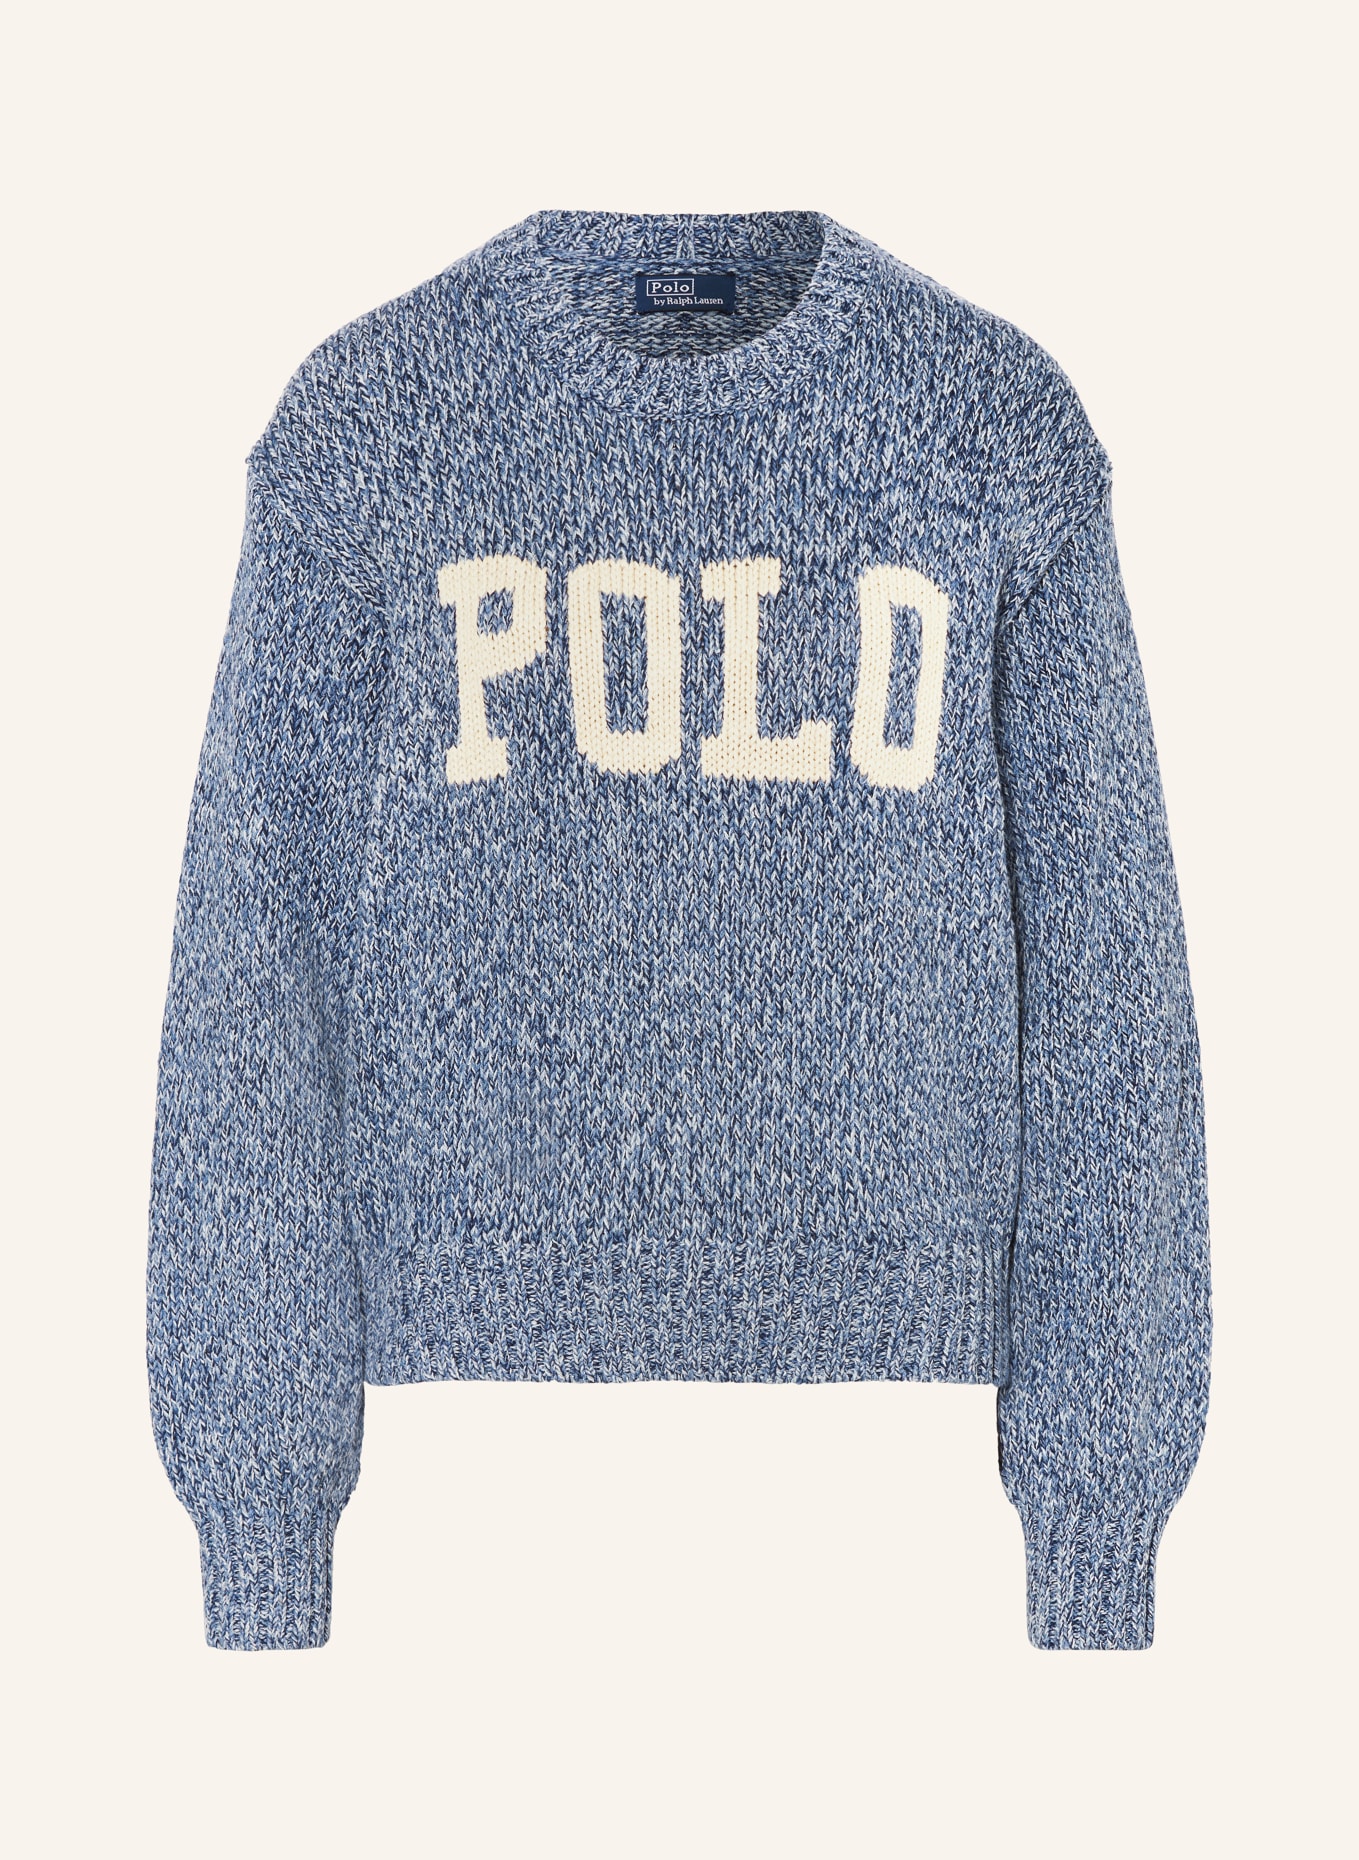 POLO RALPH LAUREN Pullover, Farbe: BLAU/ HELLBLAU/ WEISS (Bild 1)